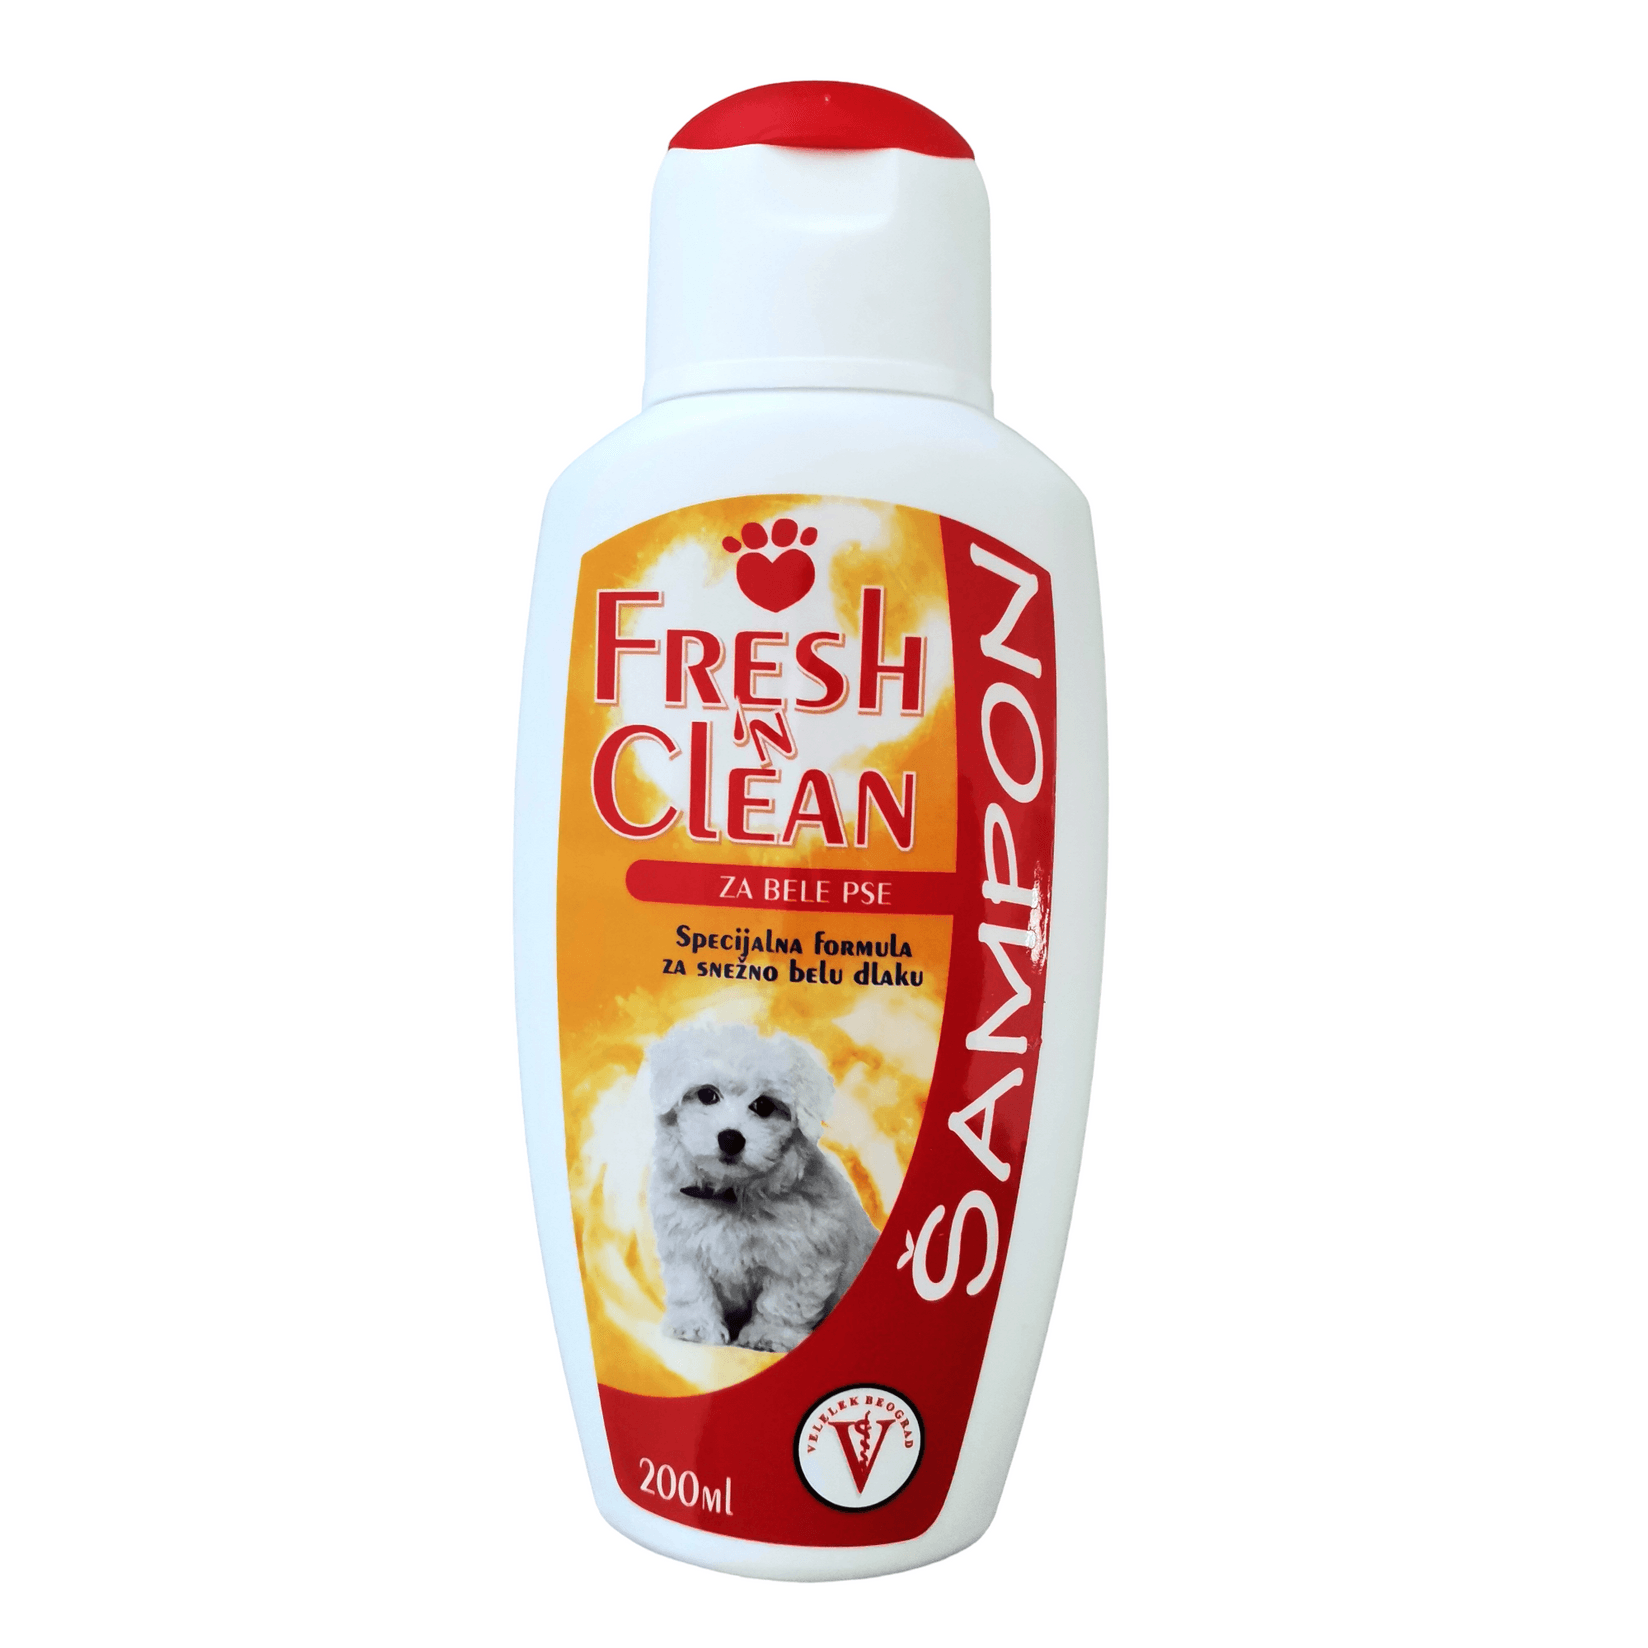 FRESH&CLEAN Šampon za pse sa belom dlakom 200ml